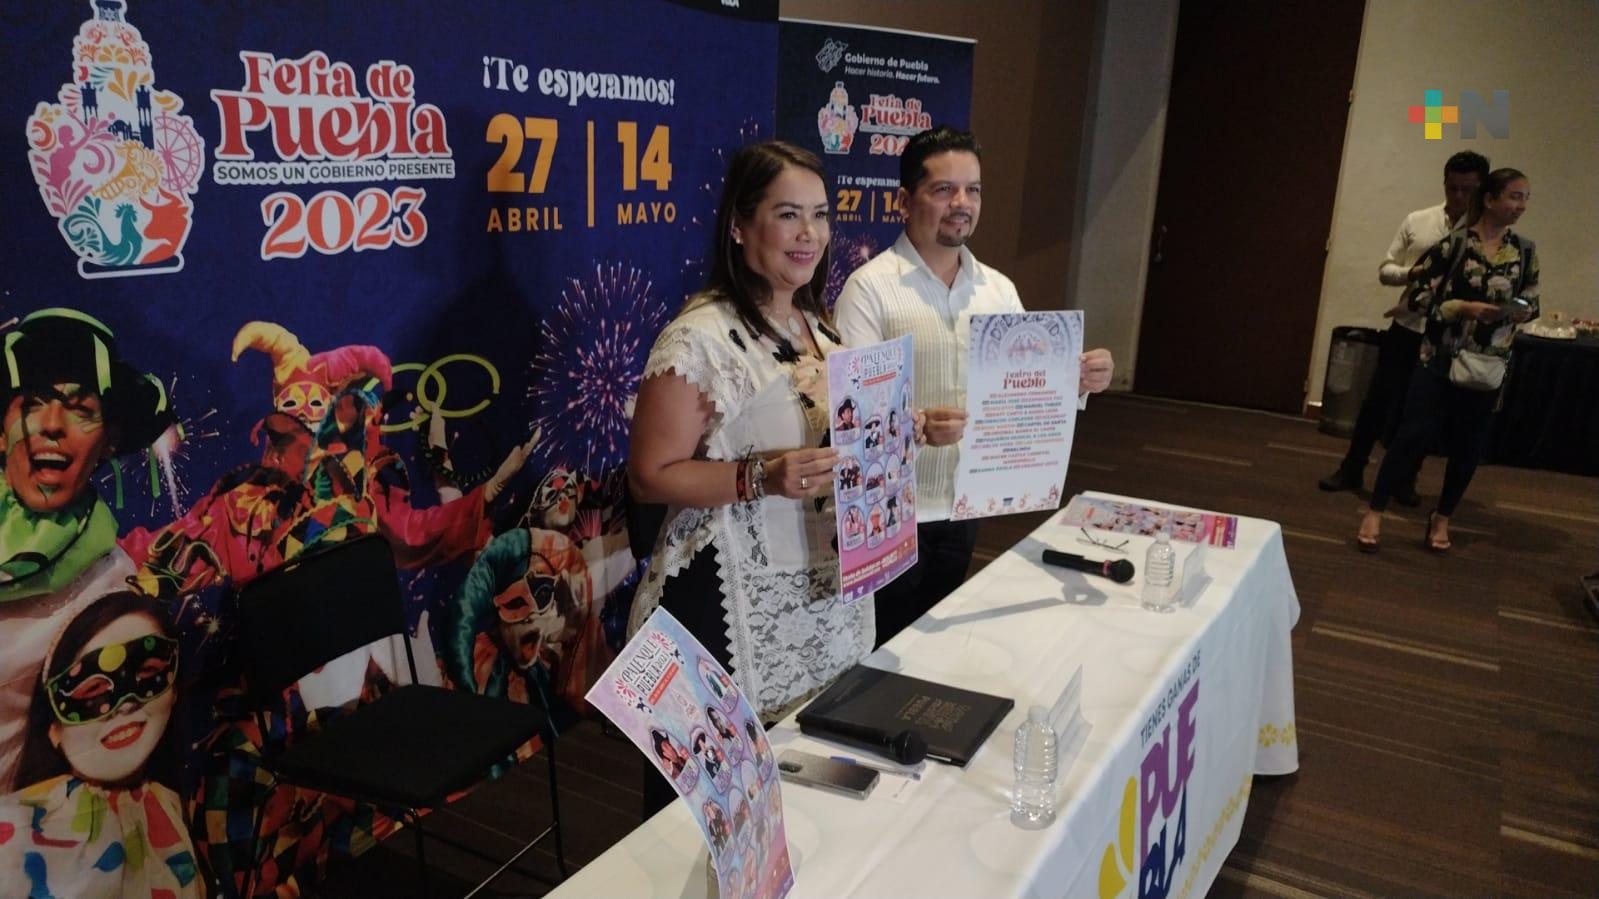 Ricky Martin, Alejandro Fernández y Belinda en Feria de Puebla 2023